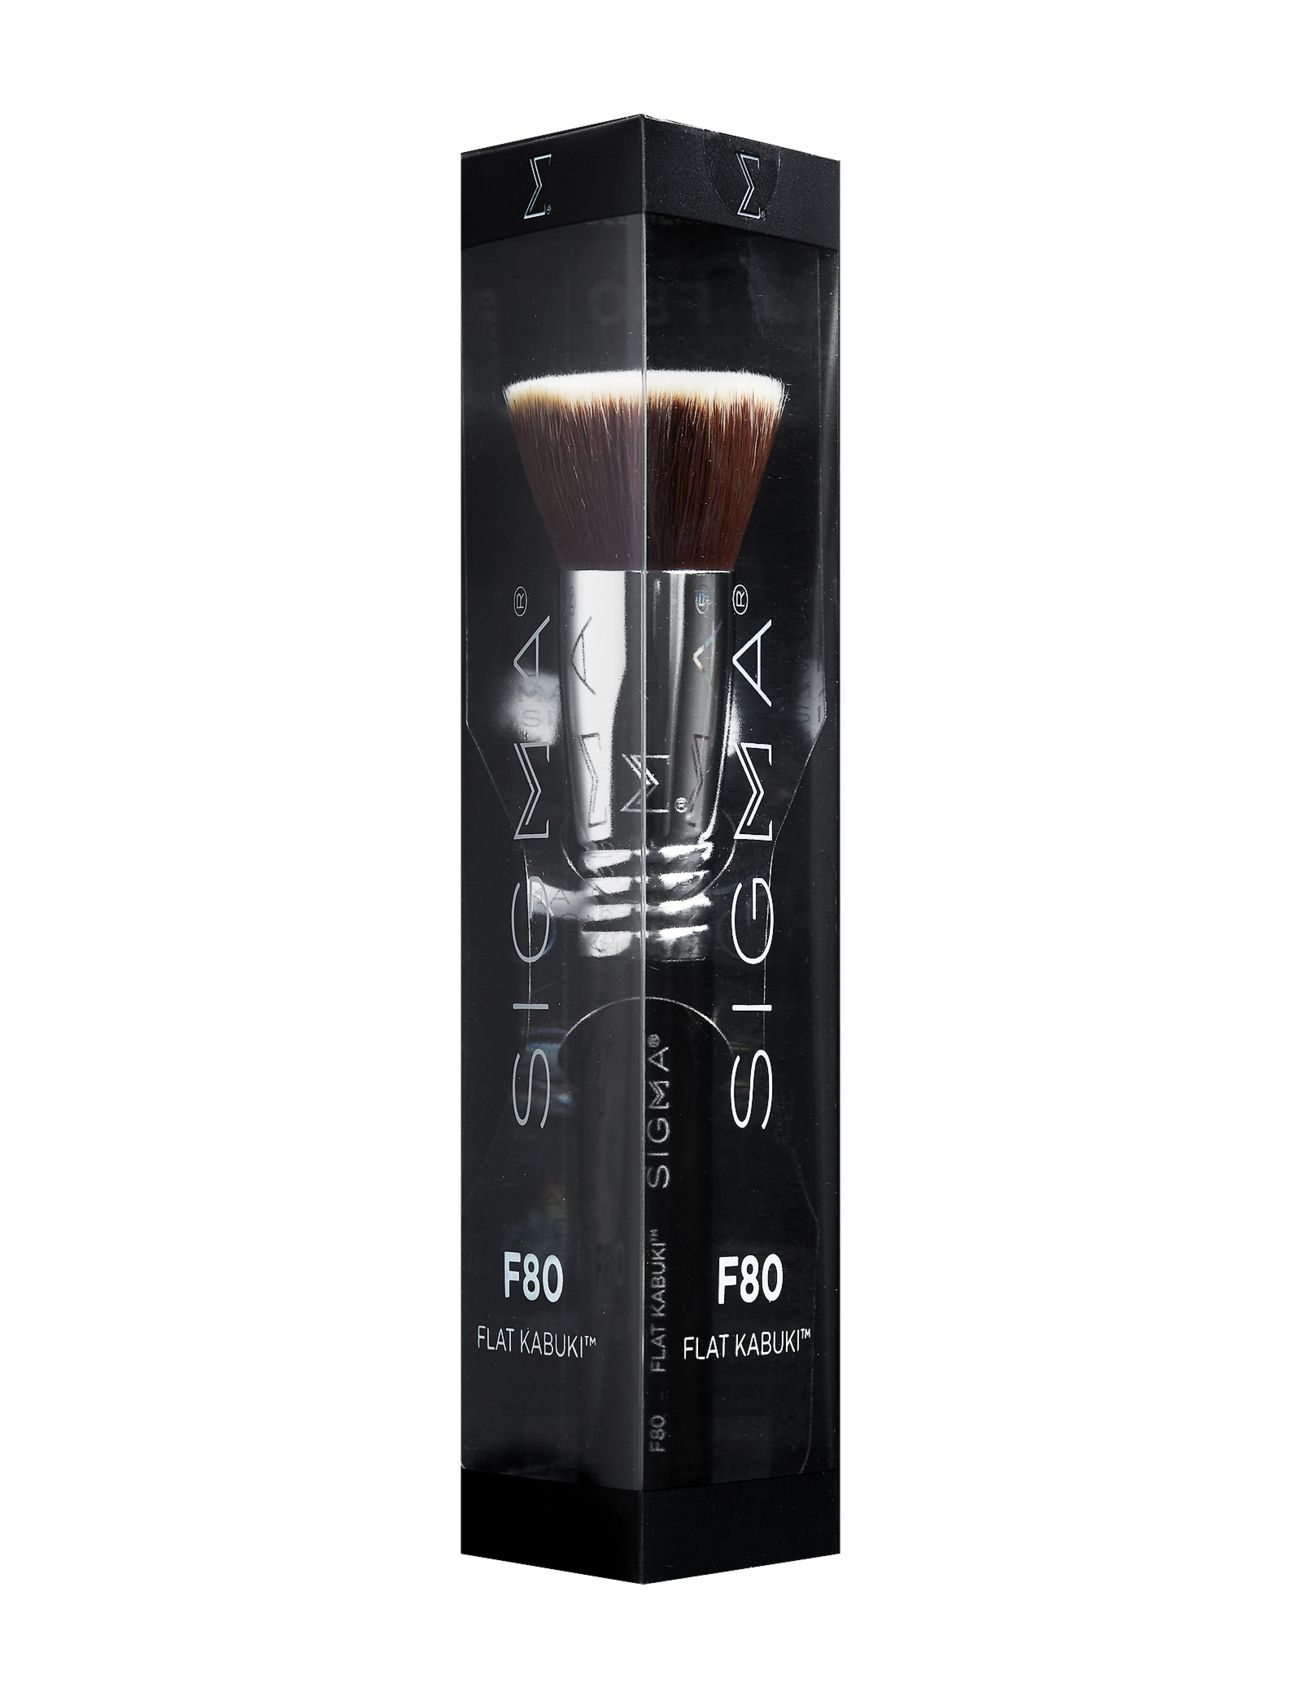 F80 Flat Kabuki™ Beauty Women Makeup Makeup Brushes Face Brushes Foundation Brushes White SIGMA Beauty